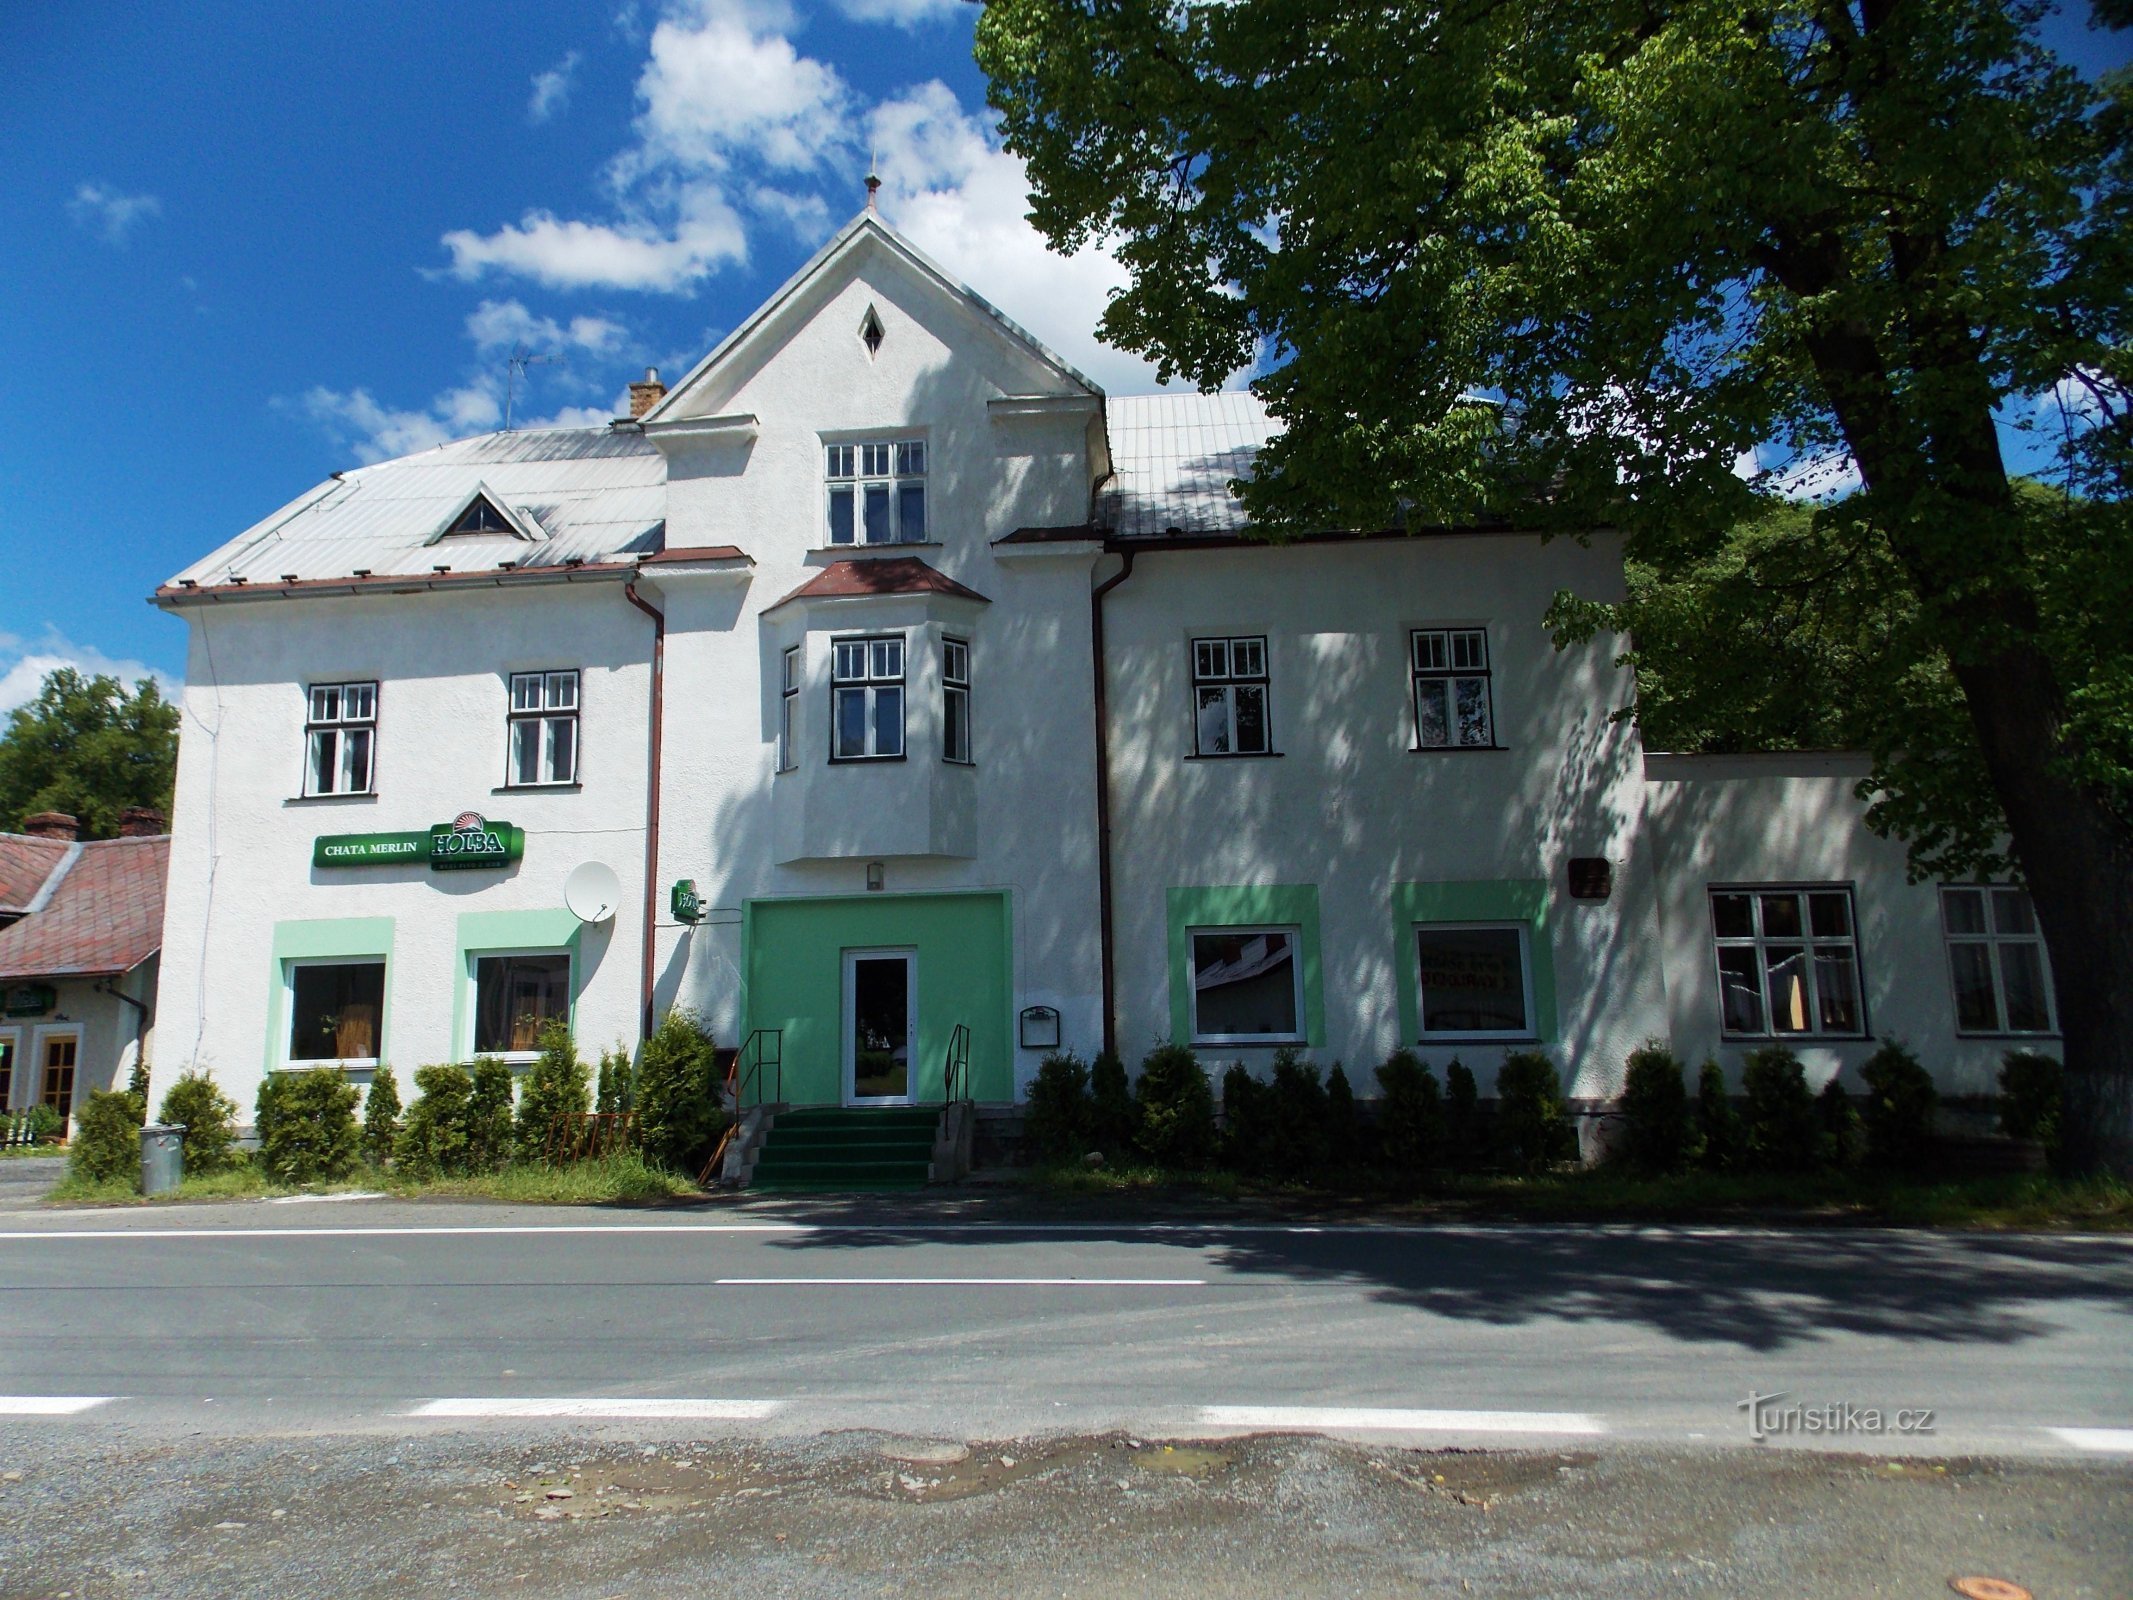 Szállás Karlovice városában, Rýmařov közelében, a Merlin nyaralóban